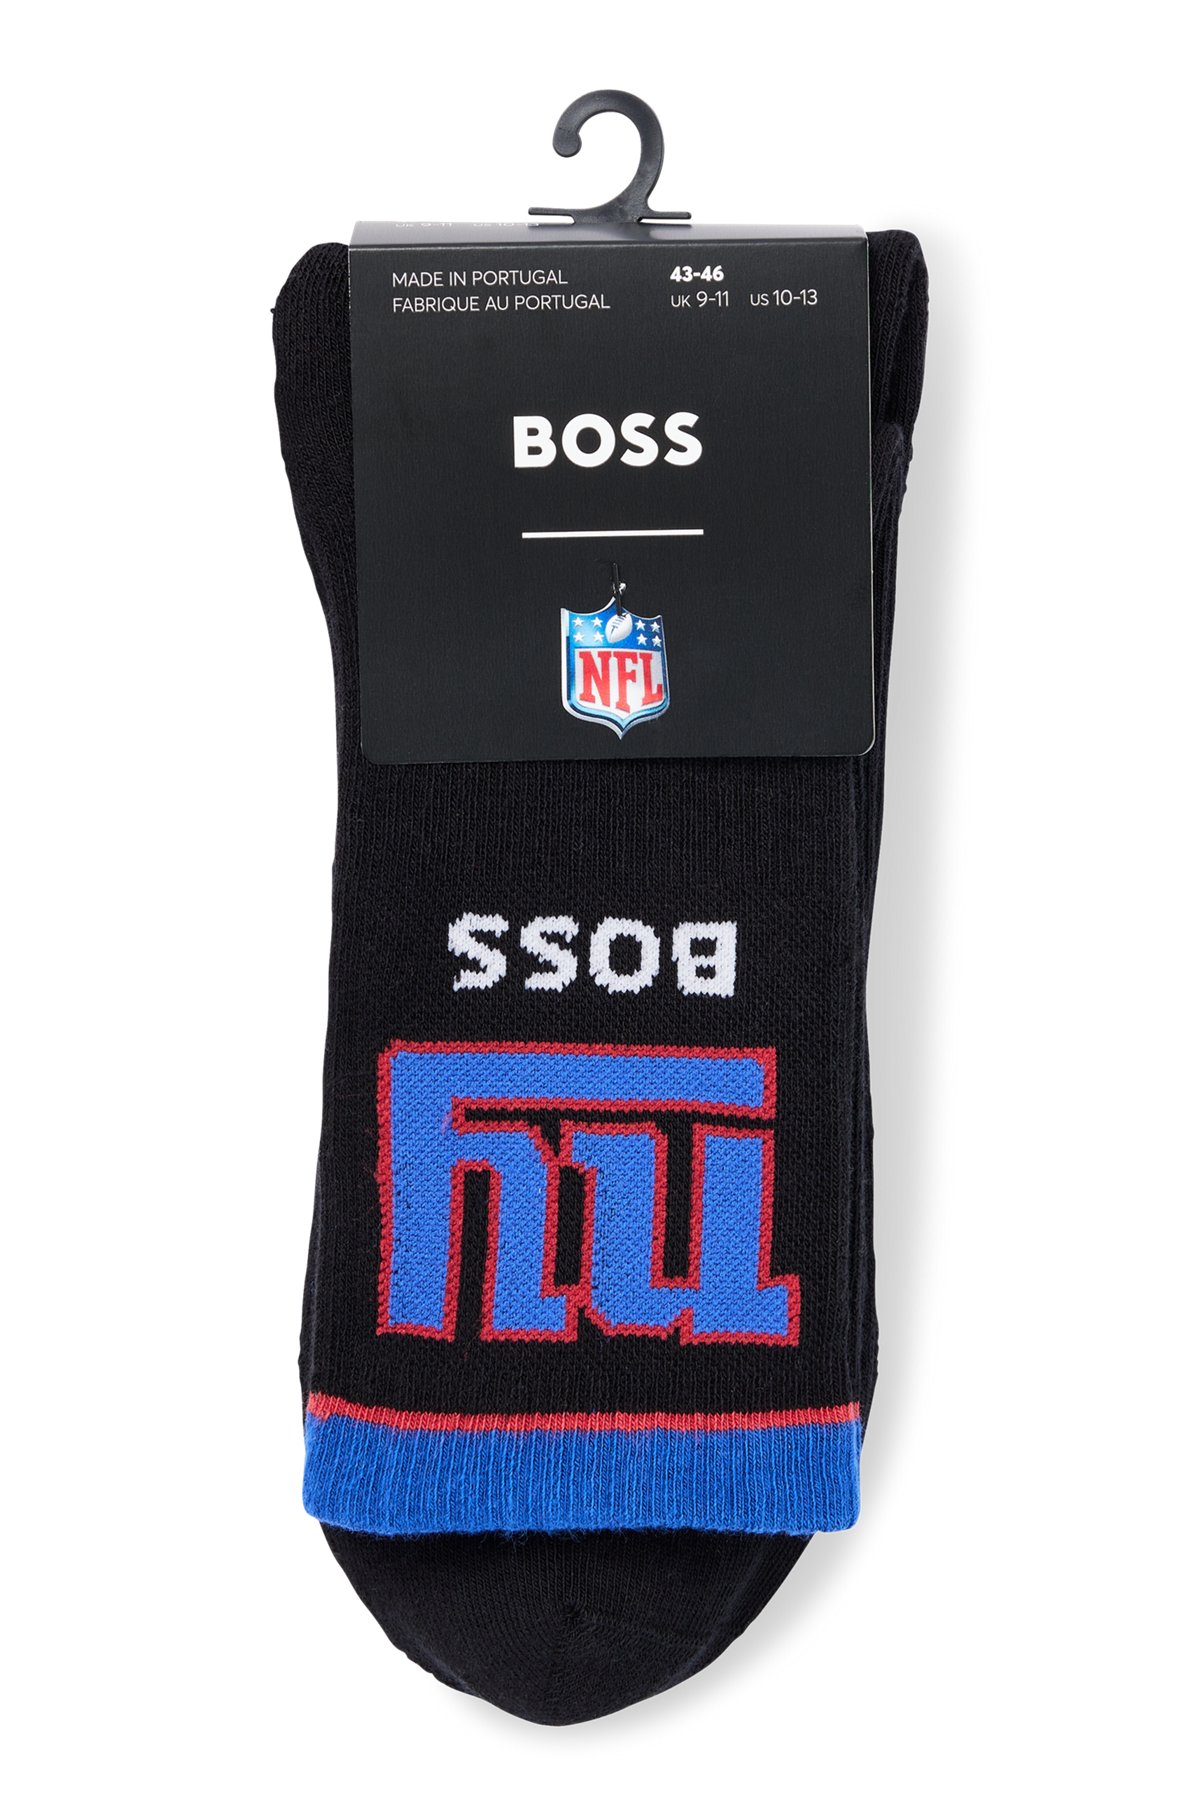 BOSS x NFL two-pack of cotton-blend short socks, Giants